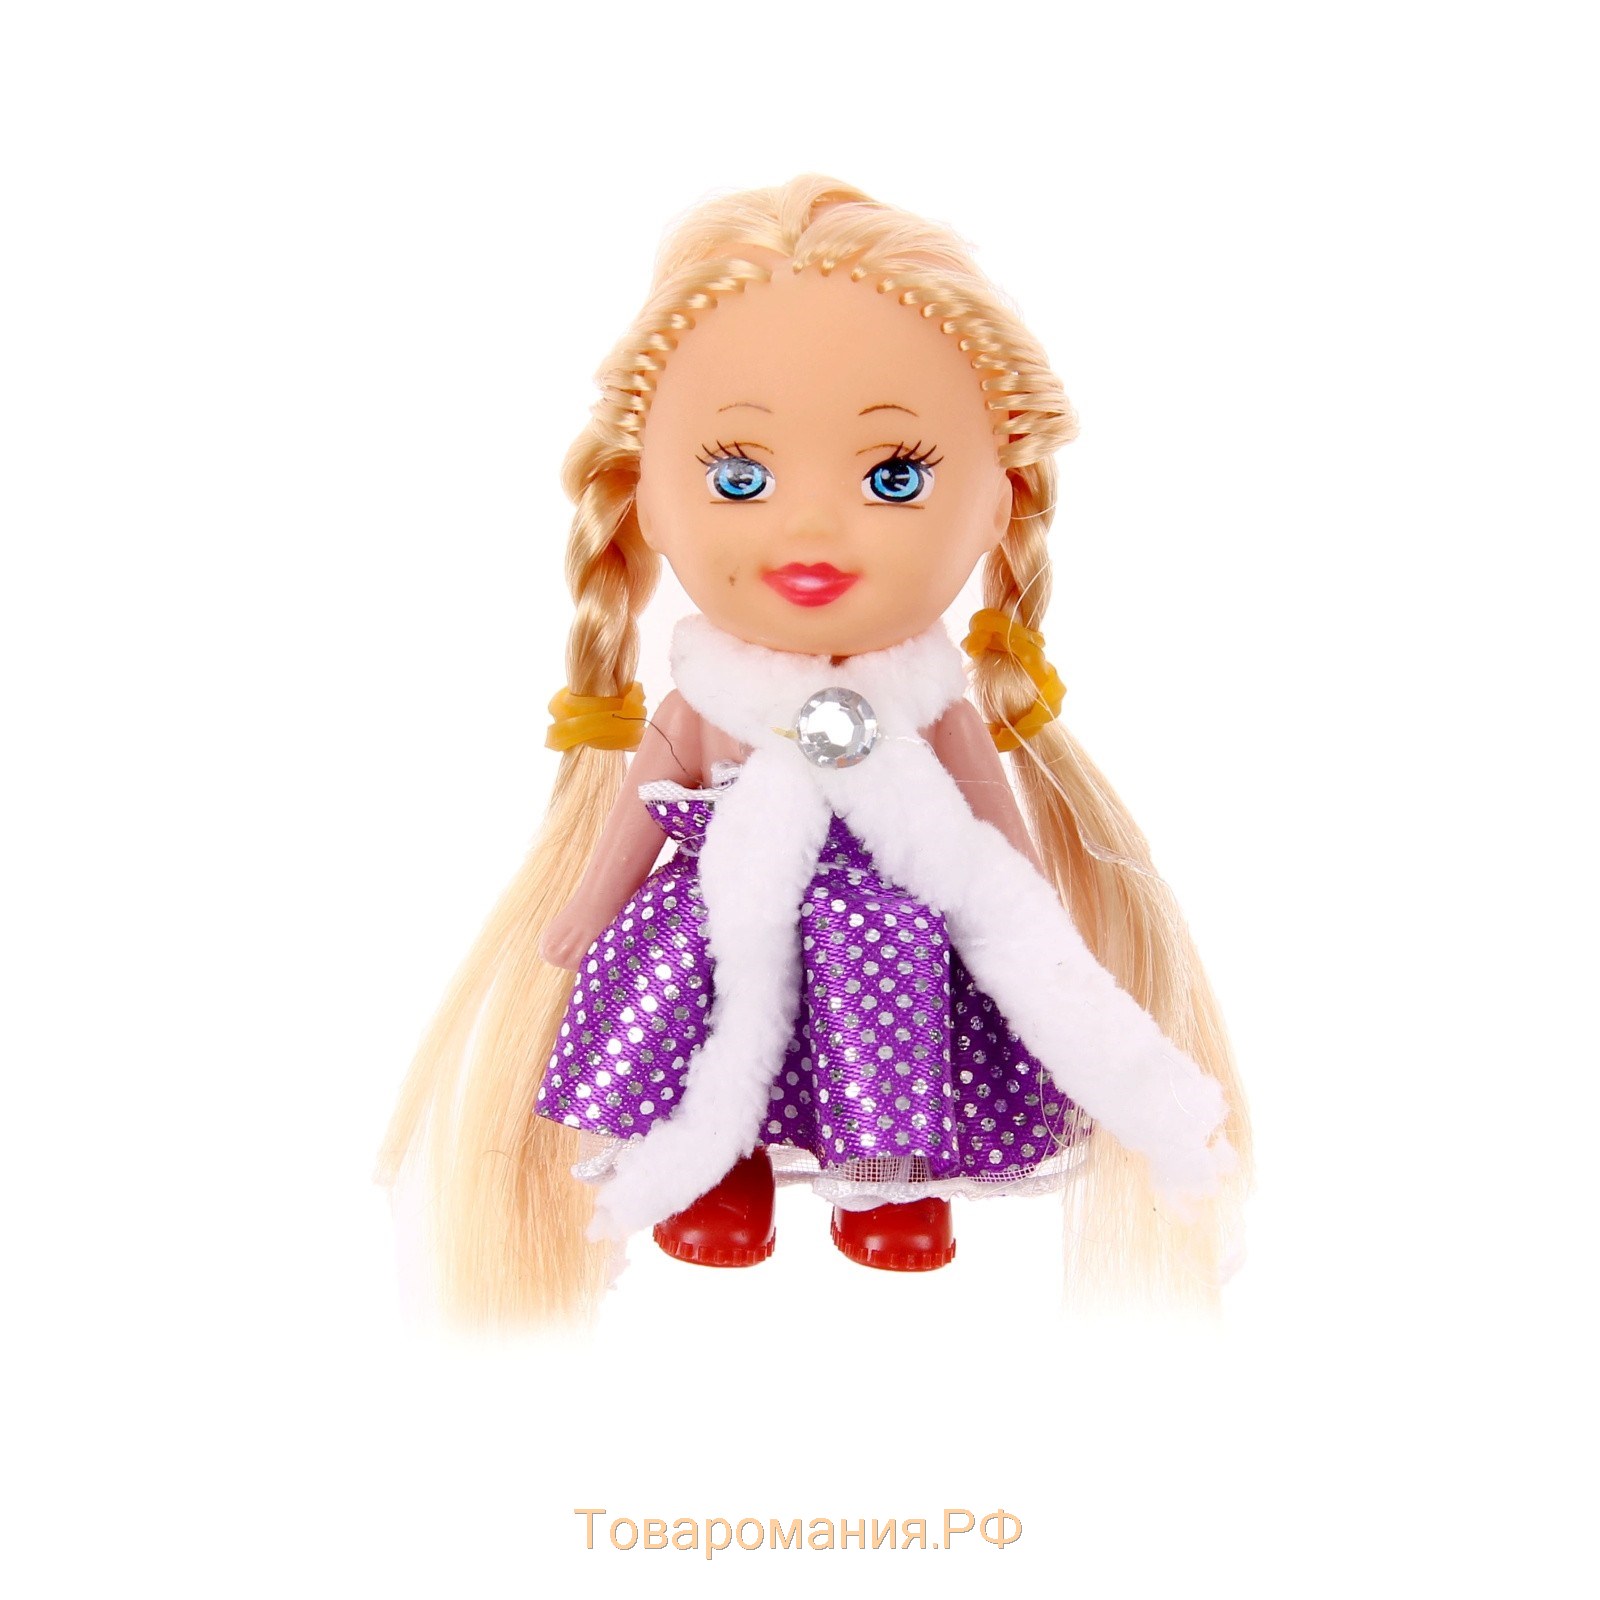 Мягкая игрушка-магнит "Девочка с косичками", цвета МИКС